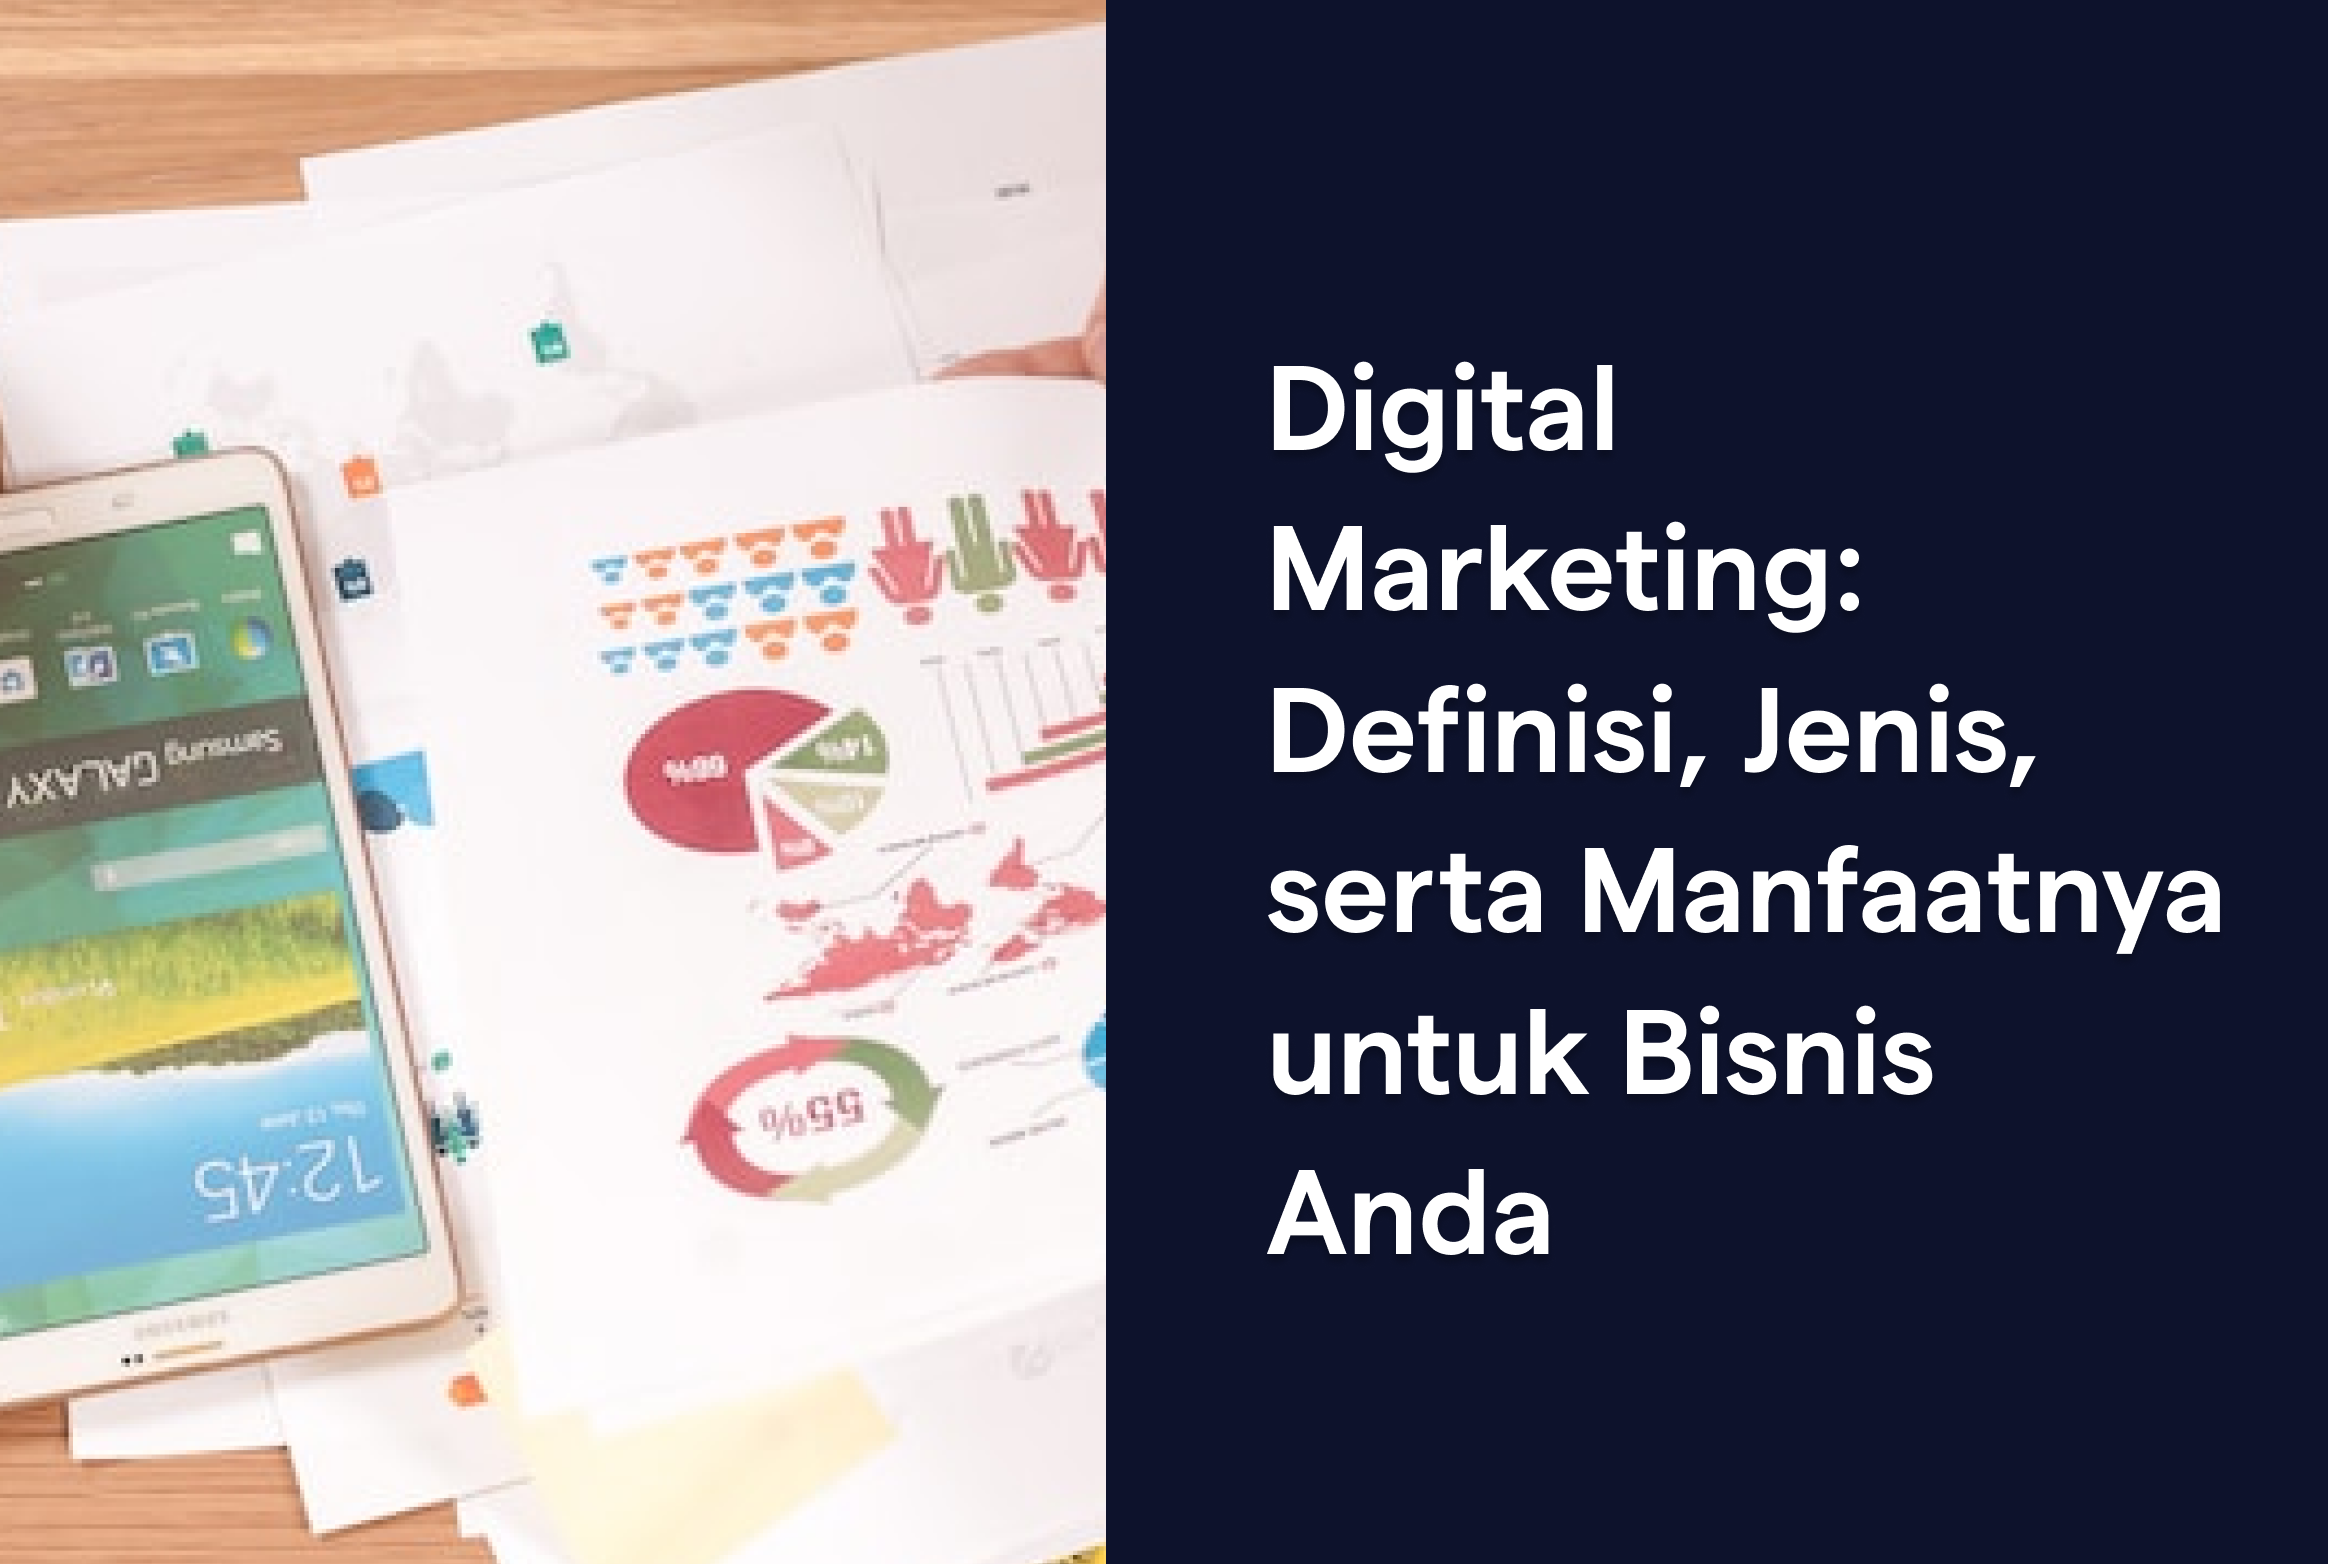 Digital Marketing: Definisi, Jenis, serta Manfaatnya untuk Bisnis Anda